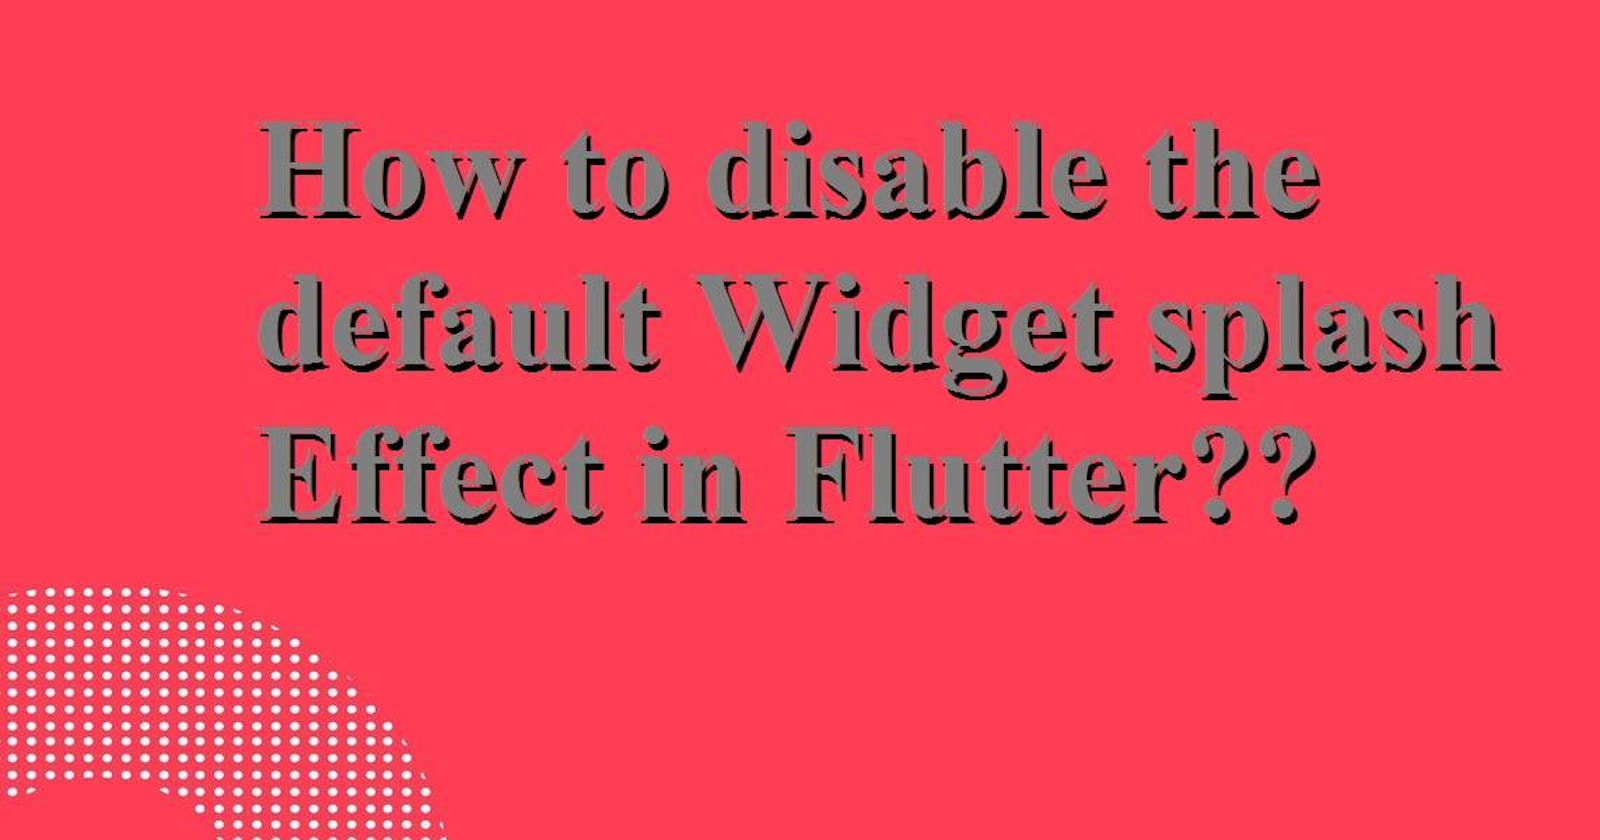 How to disable the default Widget splash effect in Flutter?